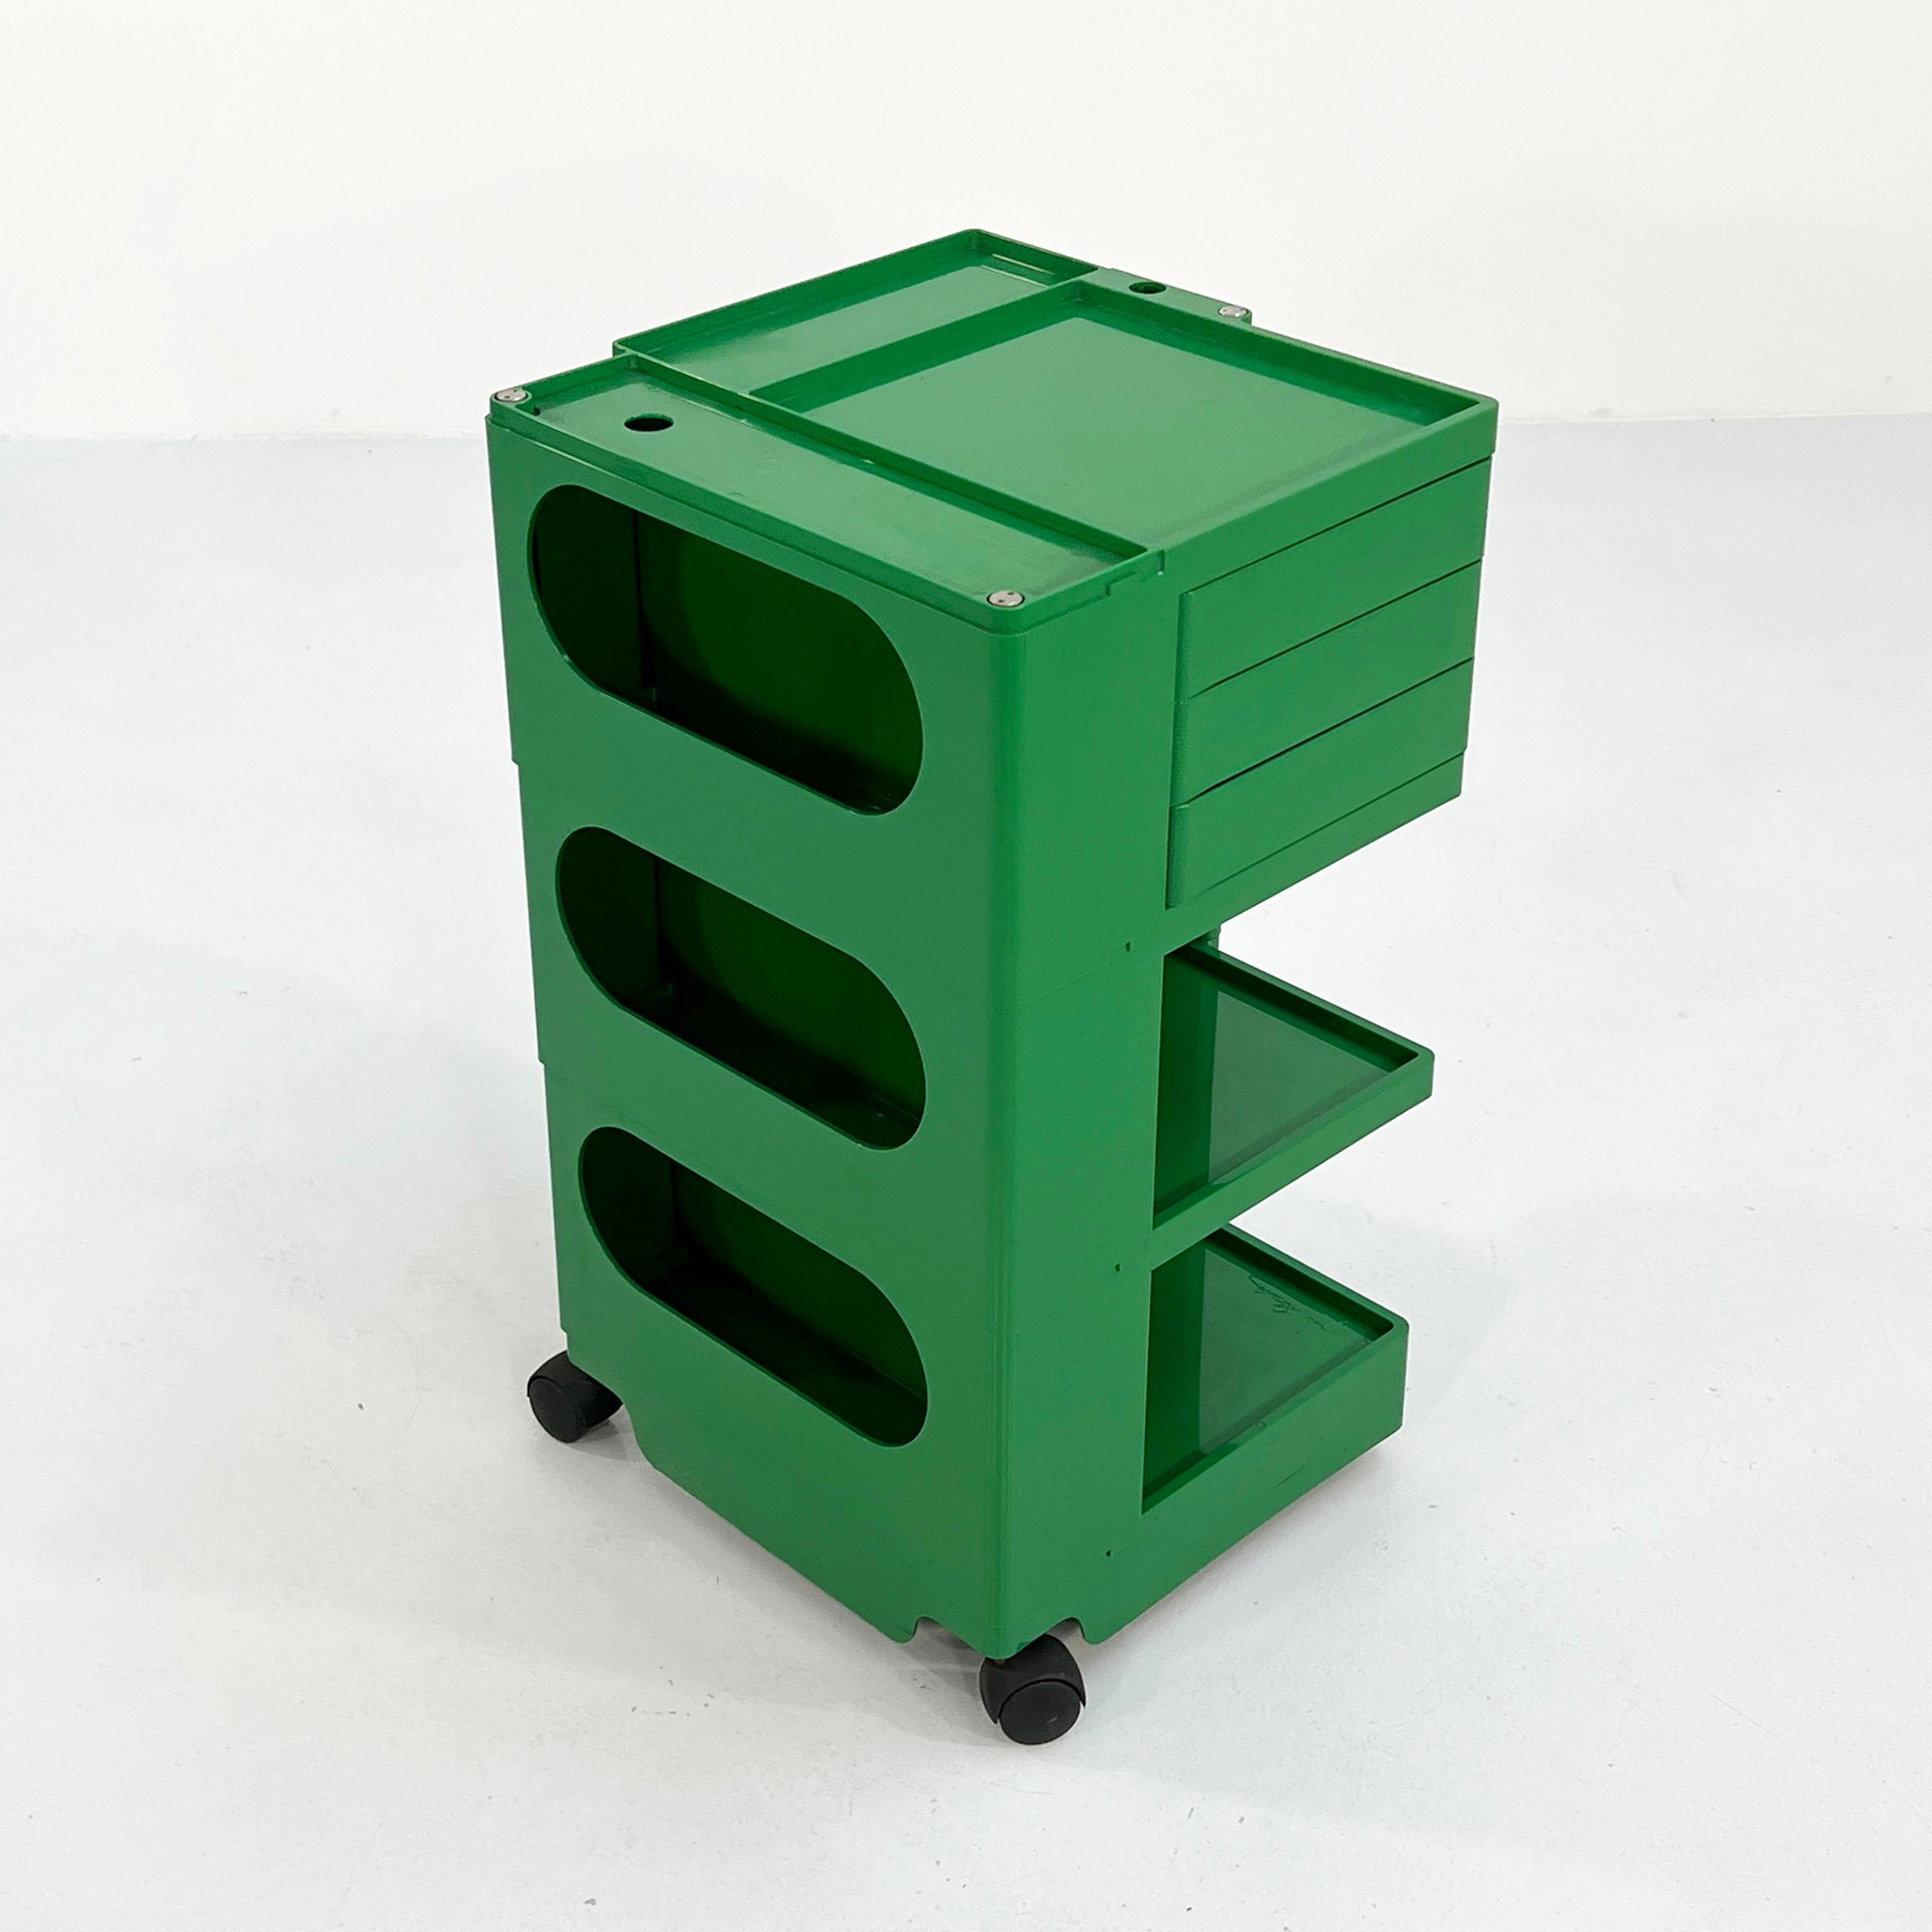 Italian Green Boby Trolley by Joe Colombo for Bieffeplast, 1960s